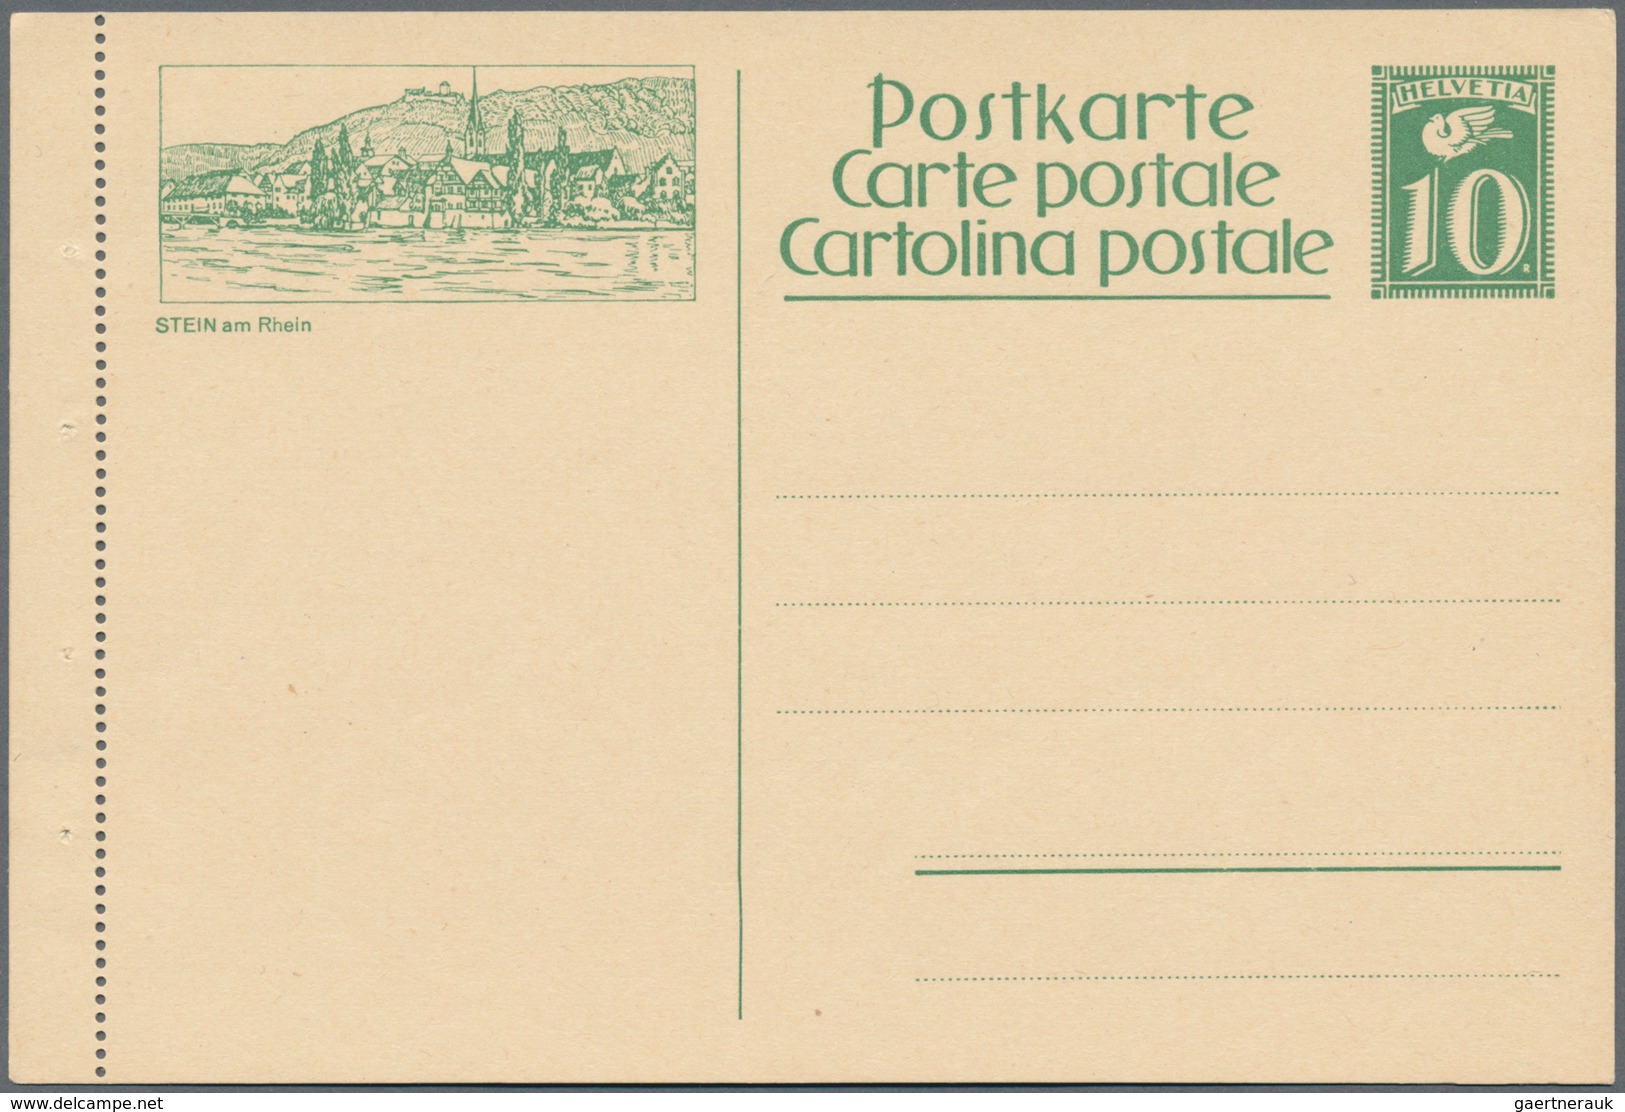 Schweiz - Ganzsachen: 1923-29 Sammlung von 20 verschiedenen, kompletten Serien der Bildpostkarten (f